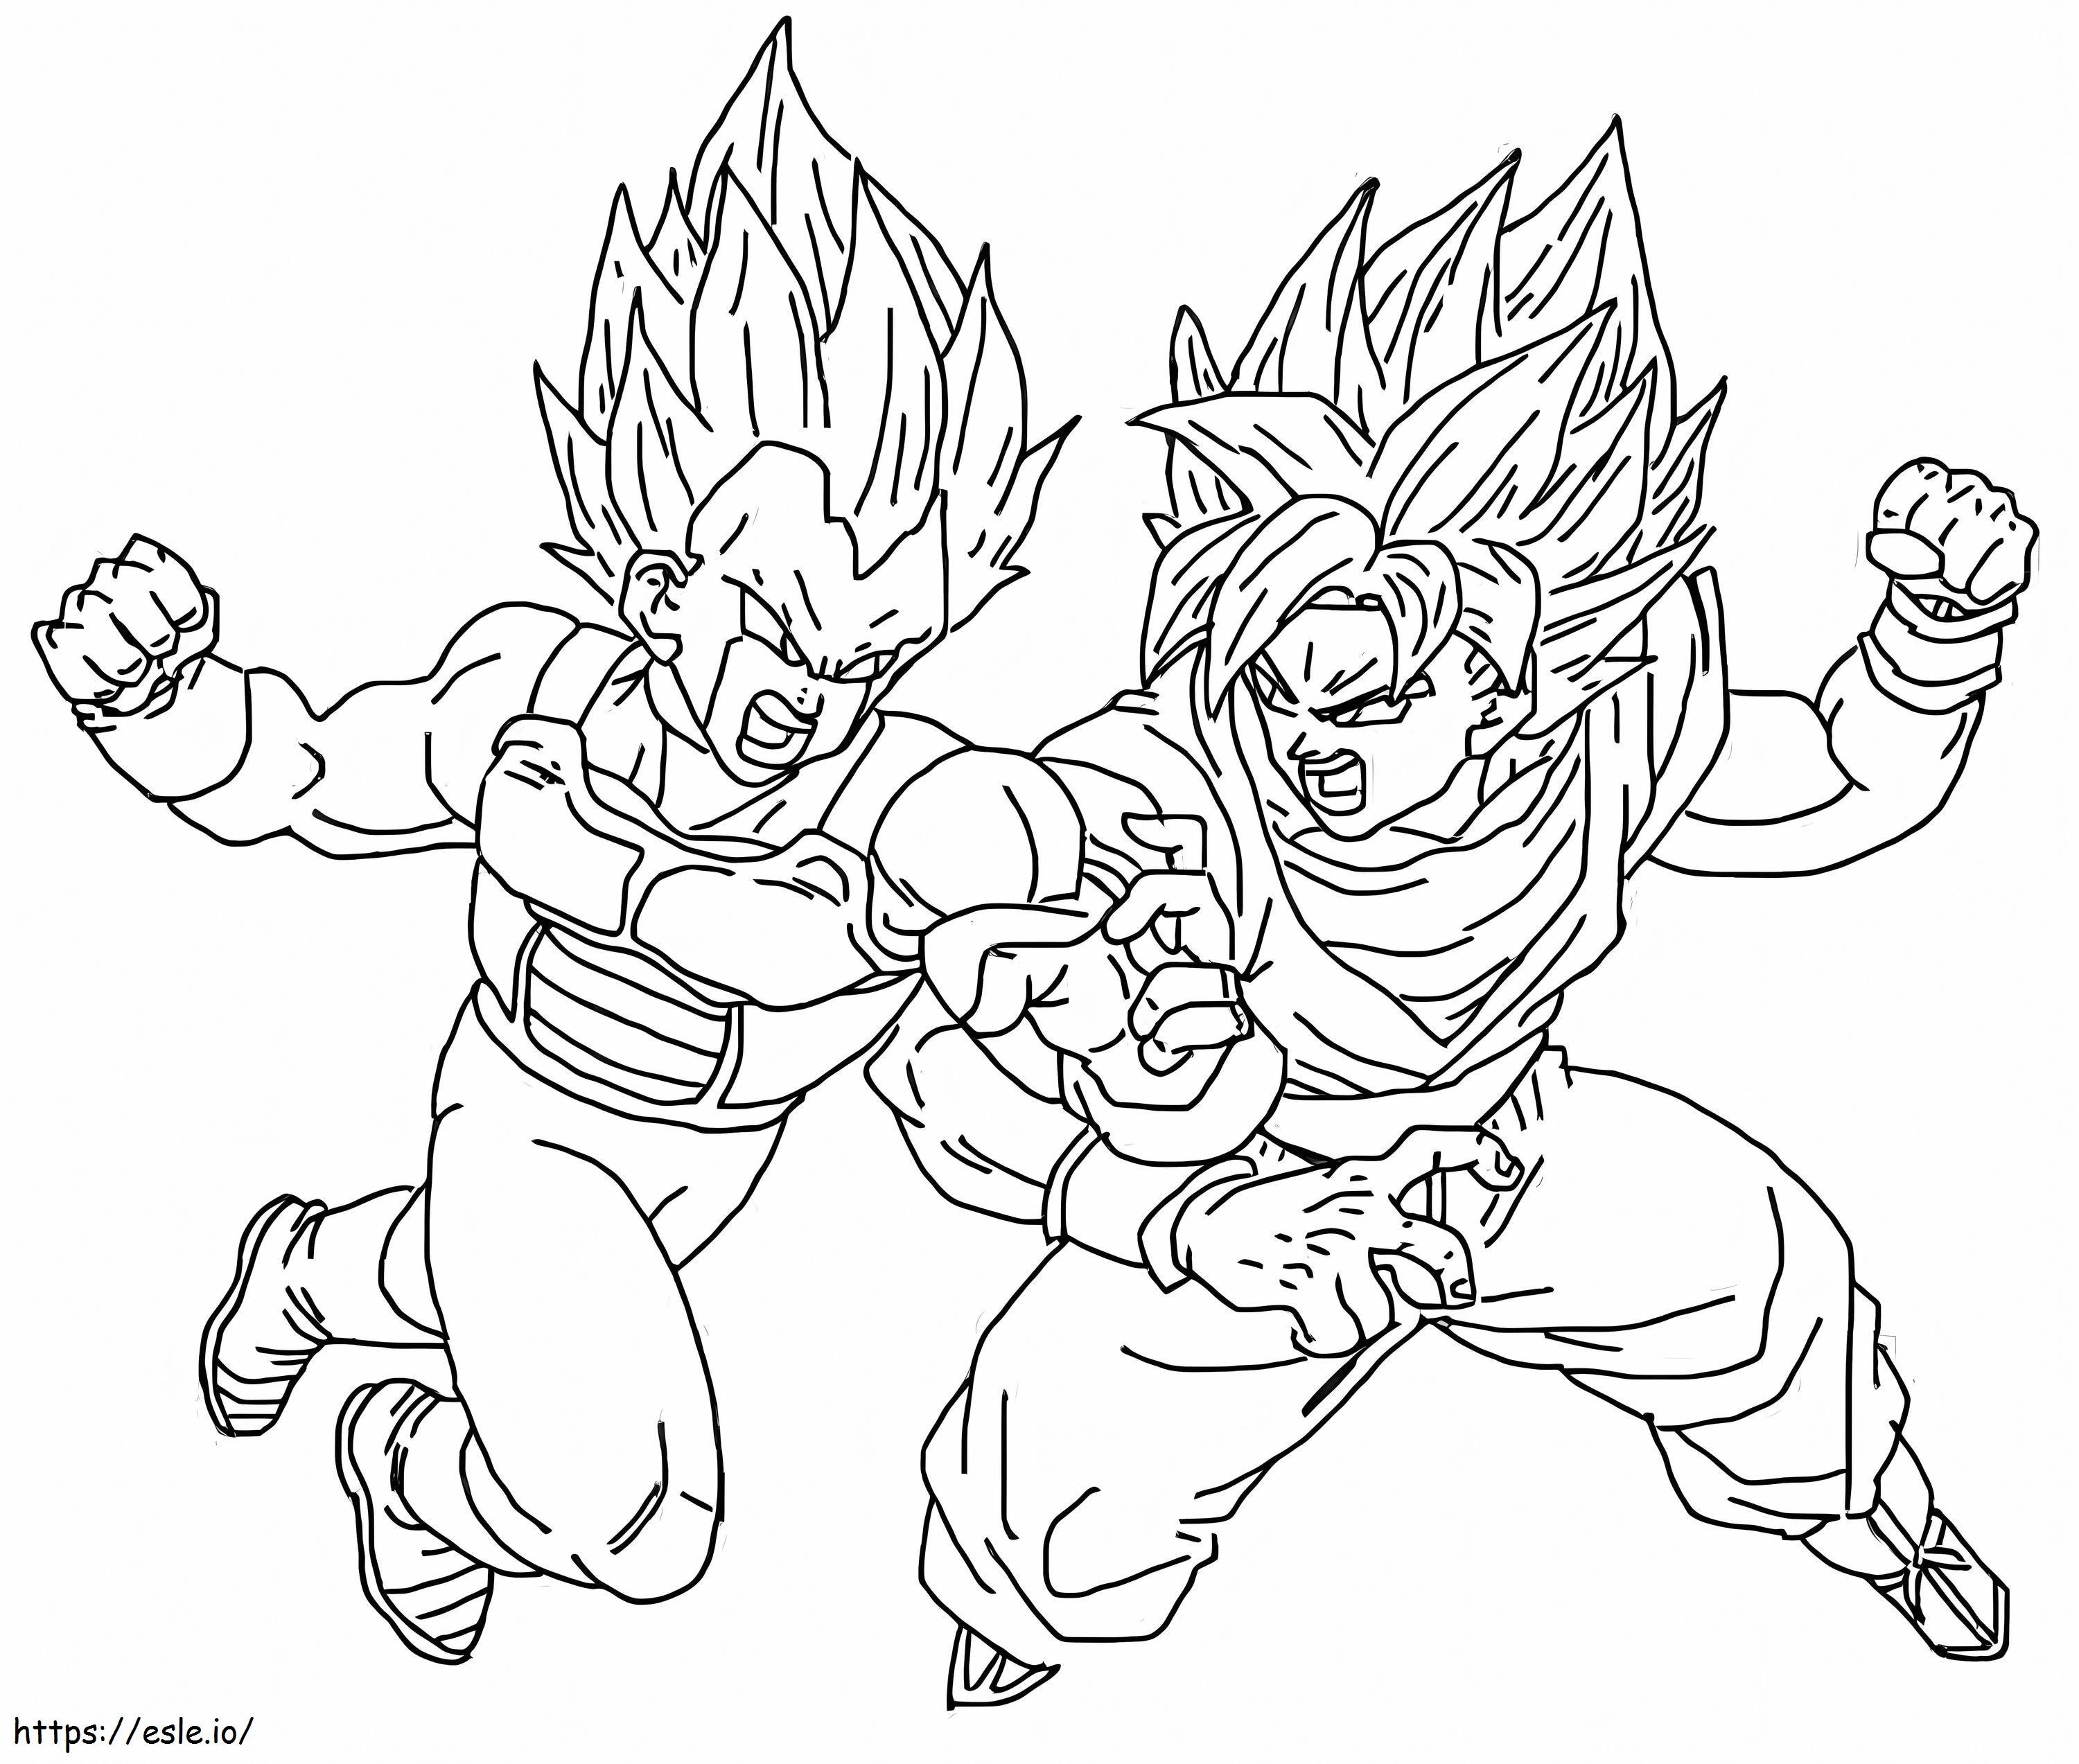 Goku versus Mecha Vegeta kleurplaat kleurplaat